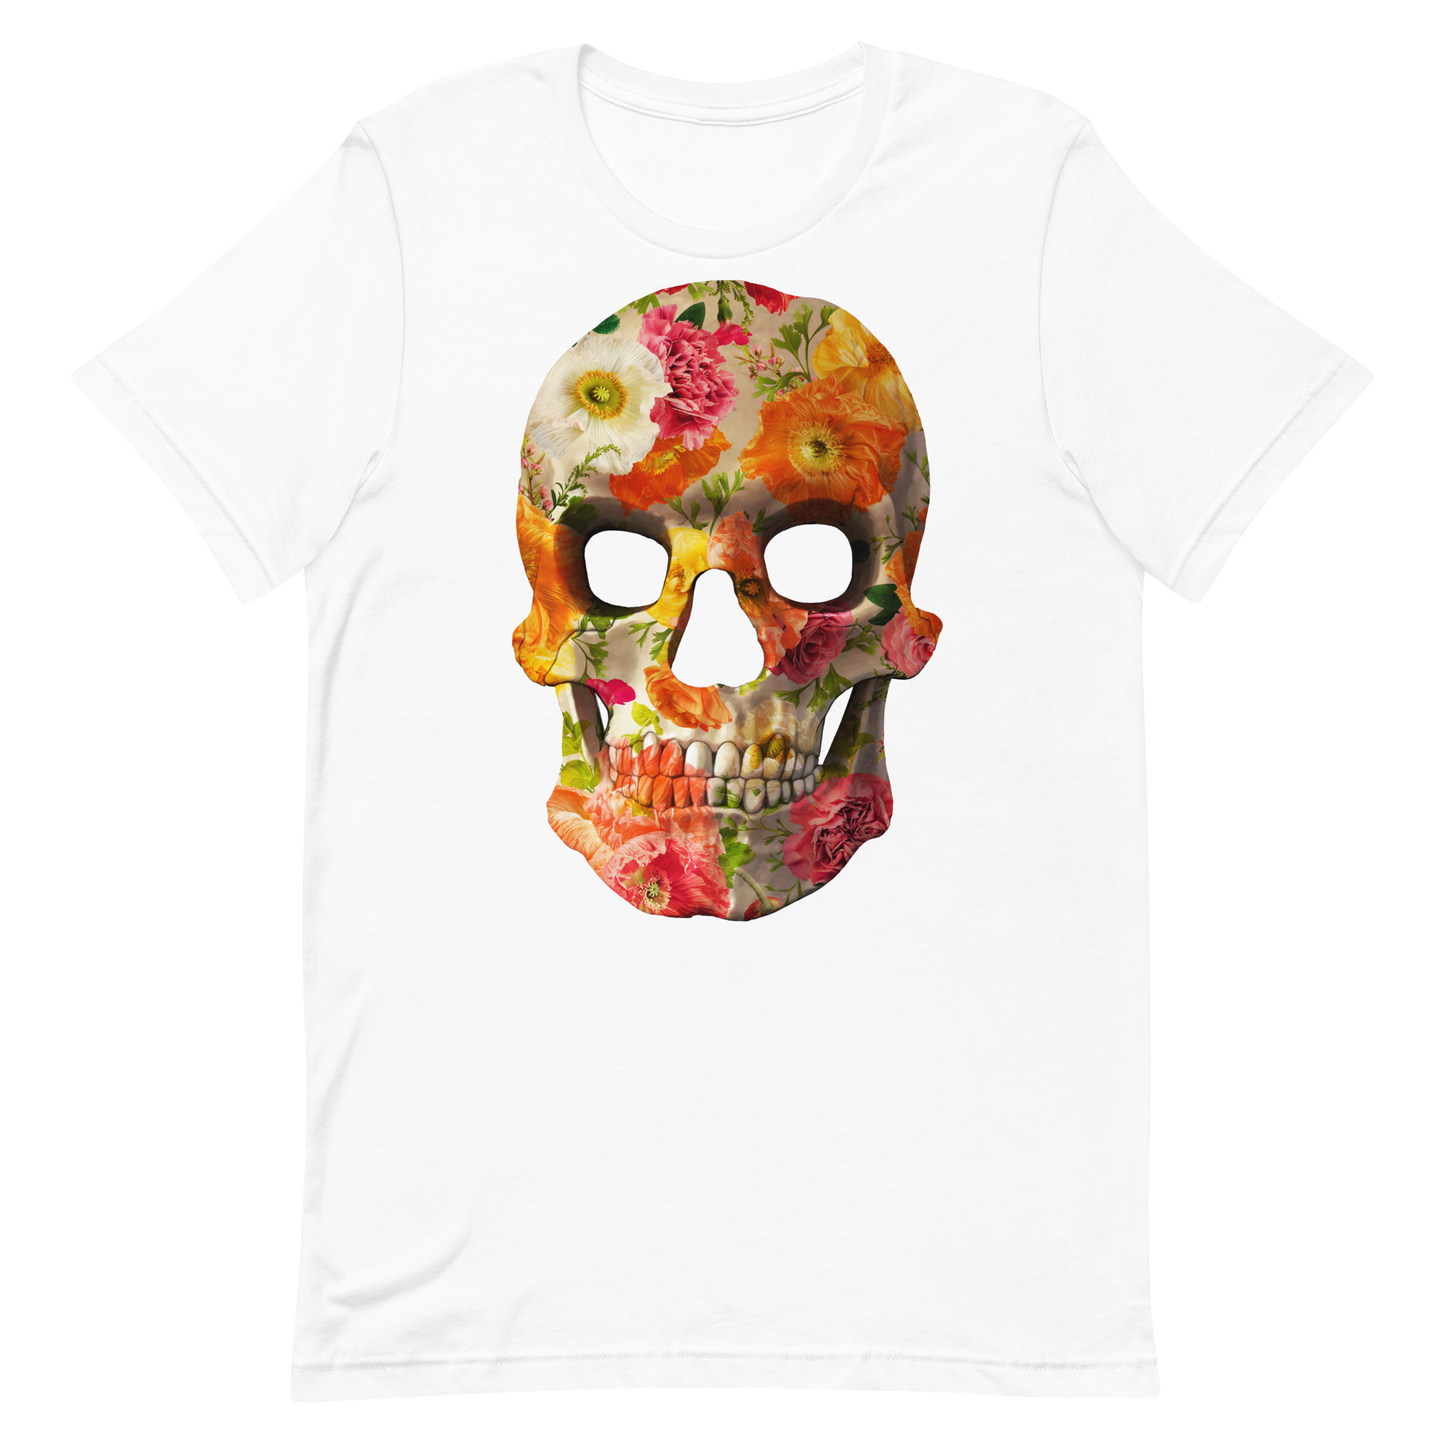 The Flower Skull motorcycle t-shirt 013